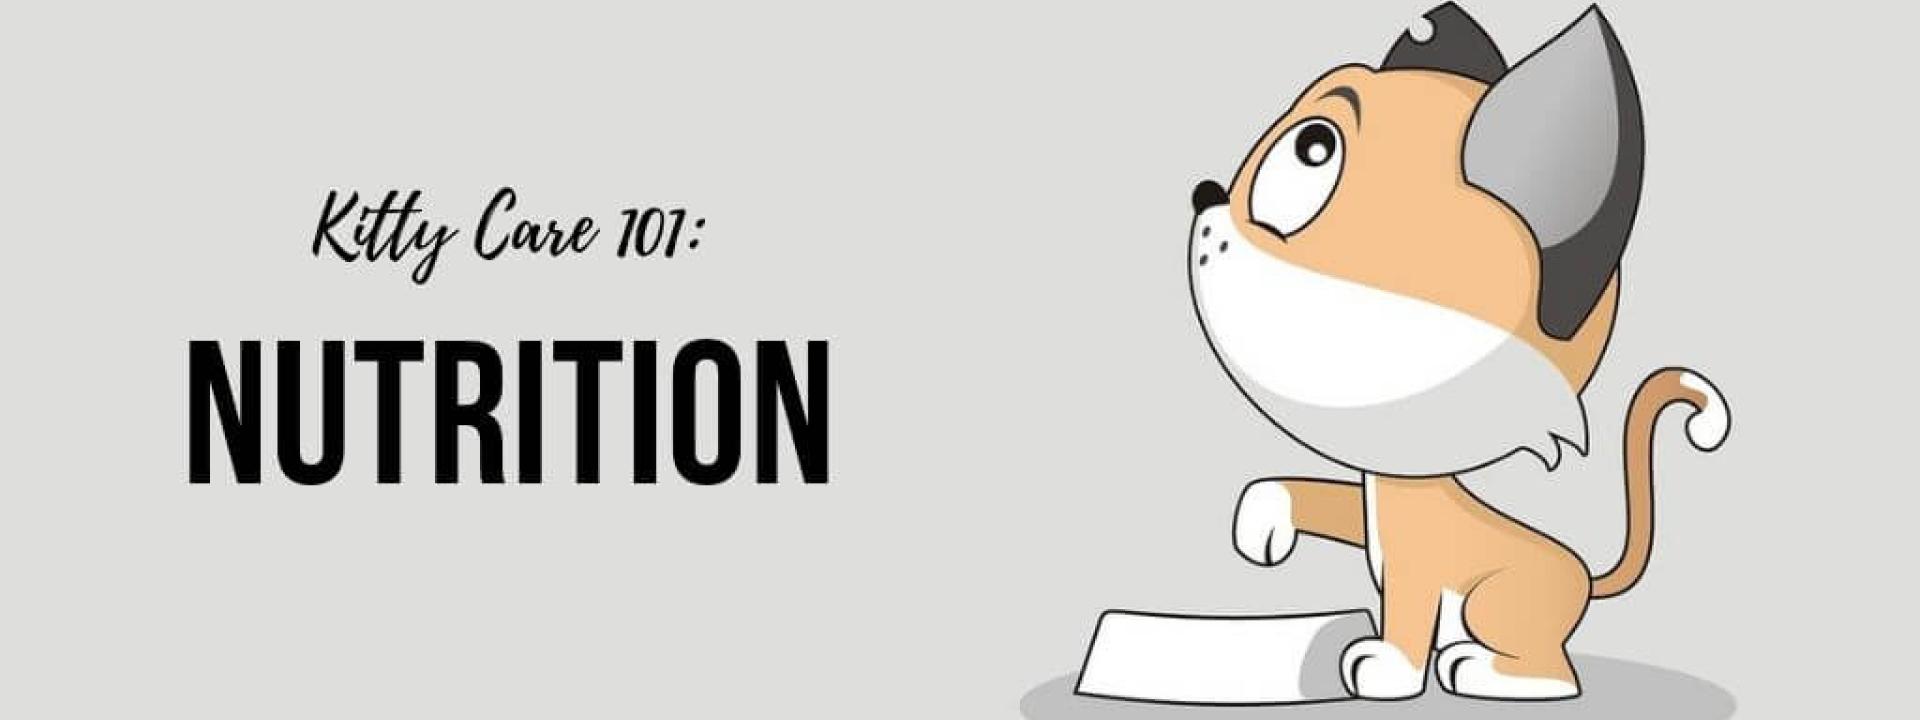 kitty-101-nutrition-blog-header.jpg